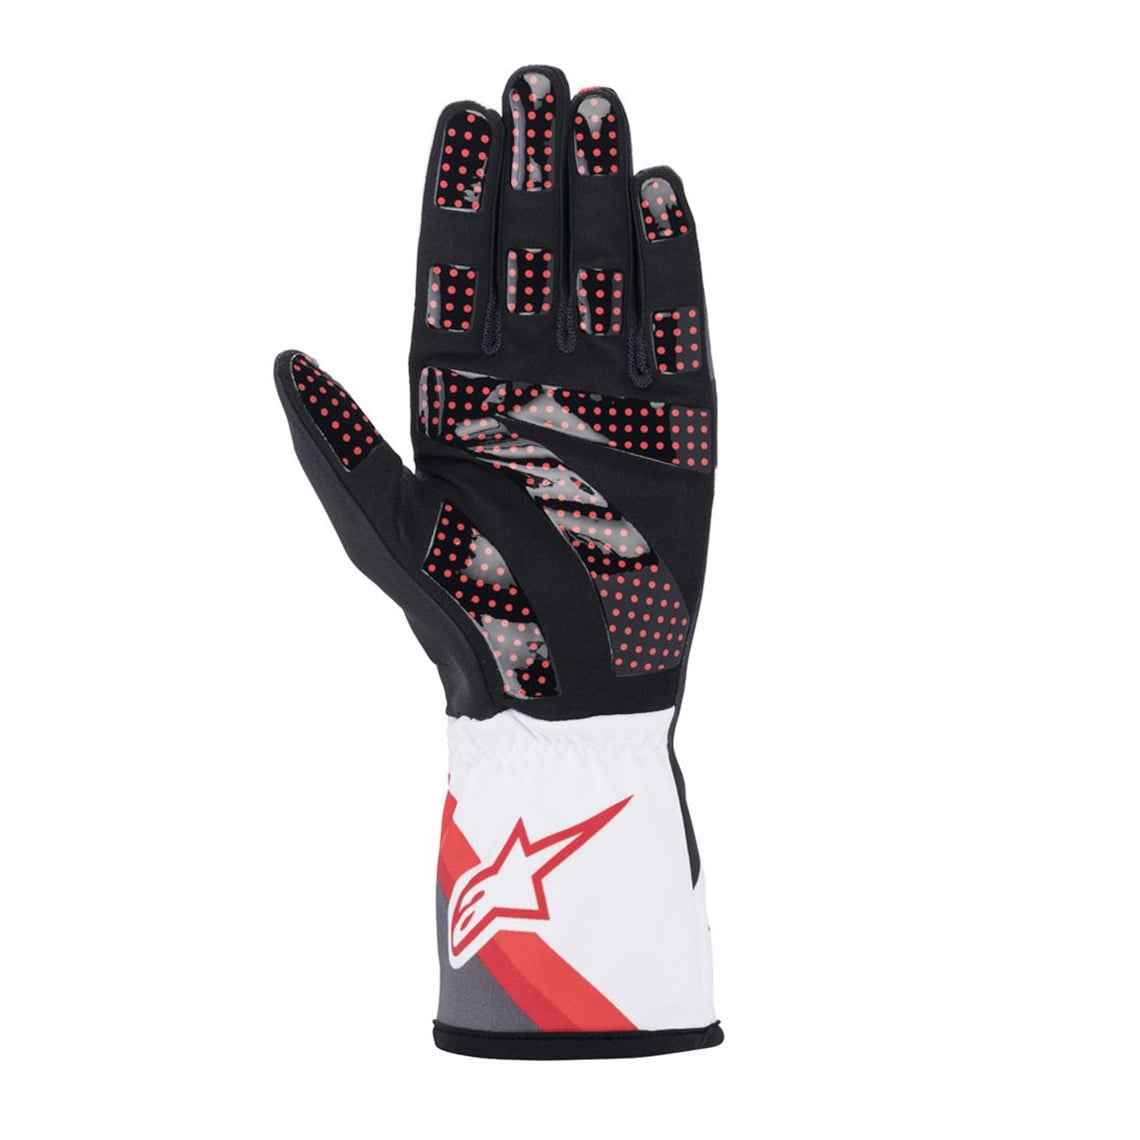 Gloves Tech-1 K Race V2 Graphic Red/Black